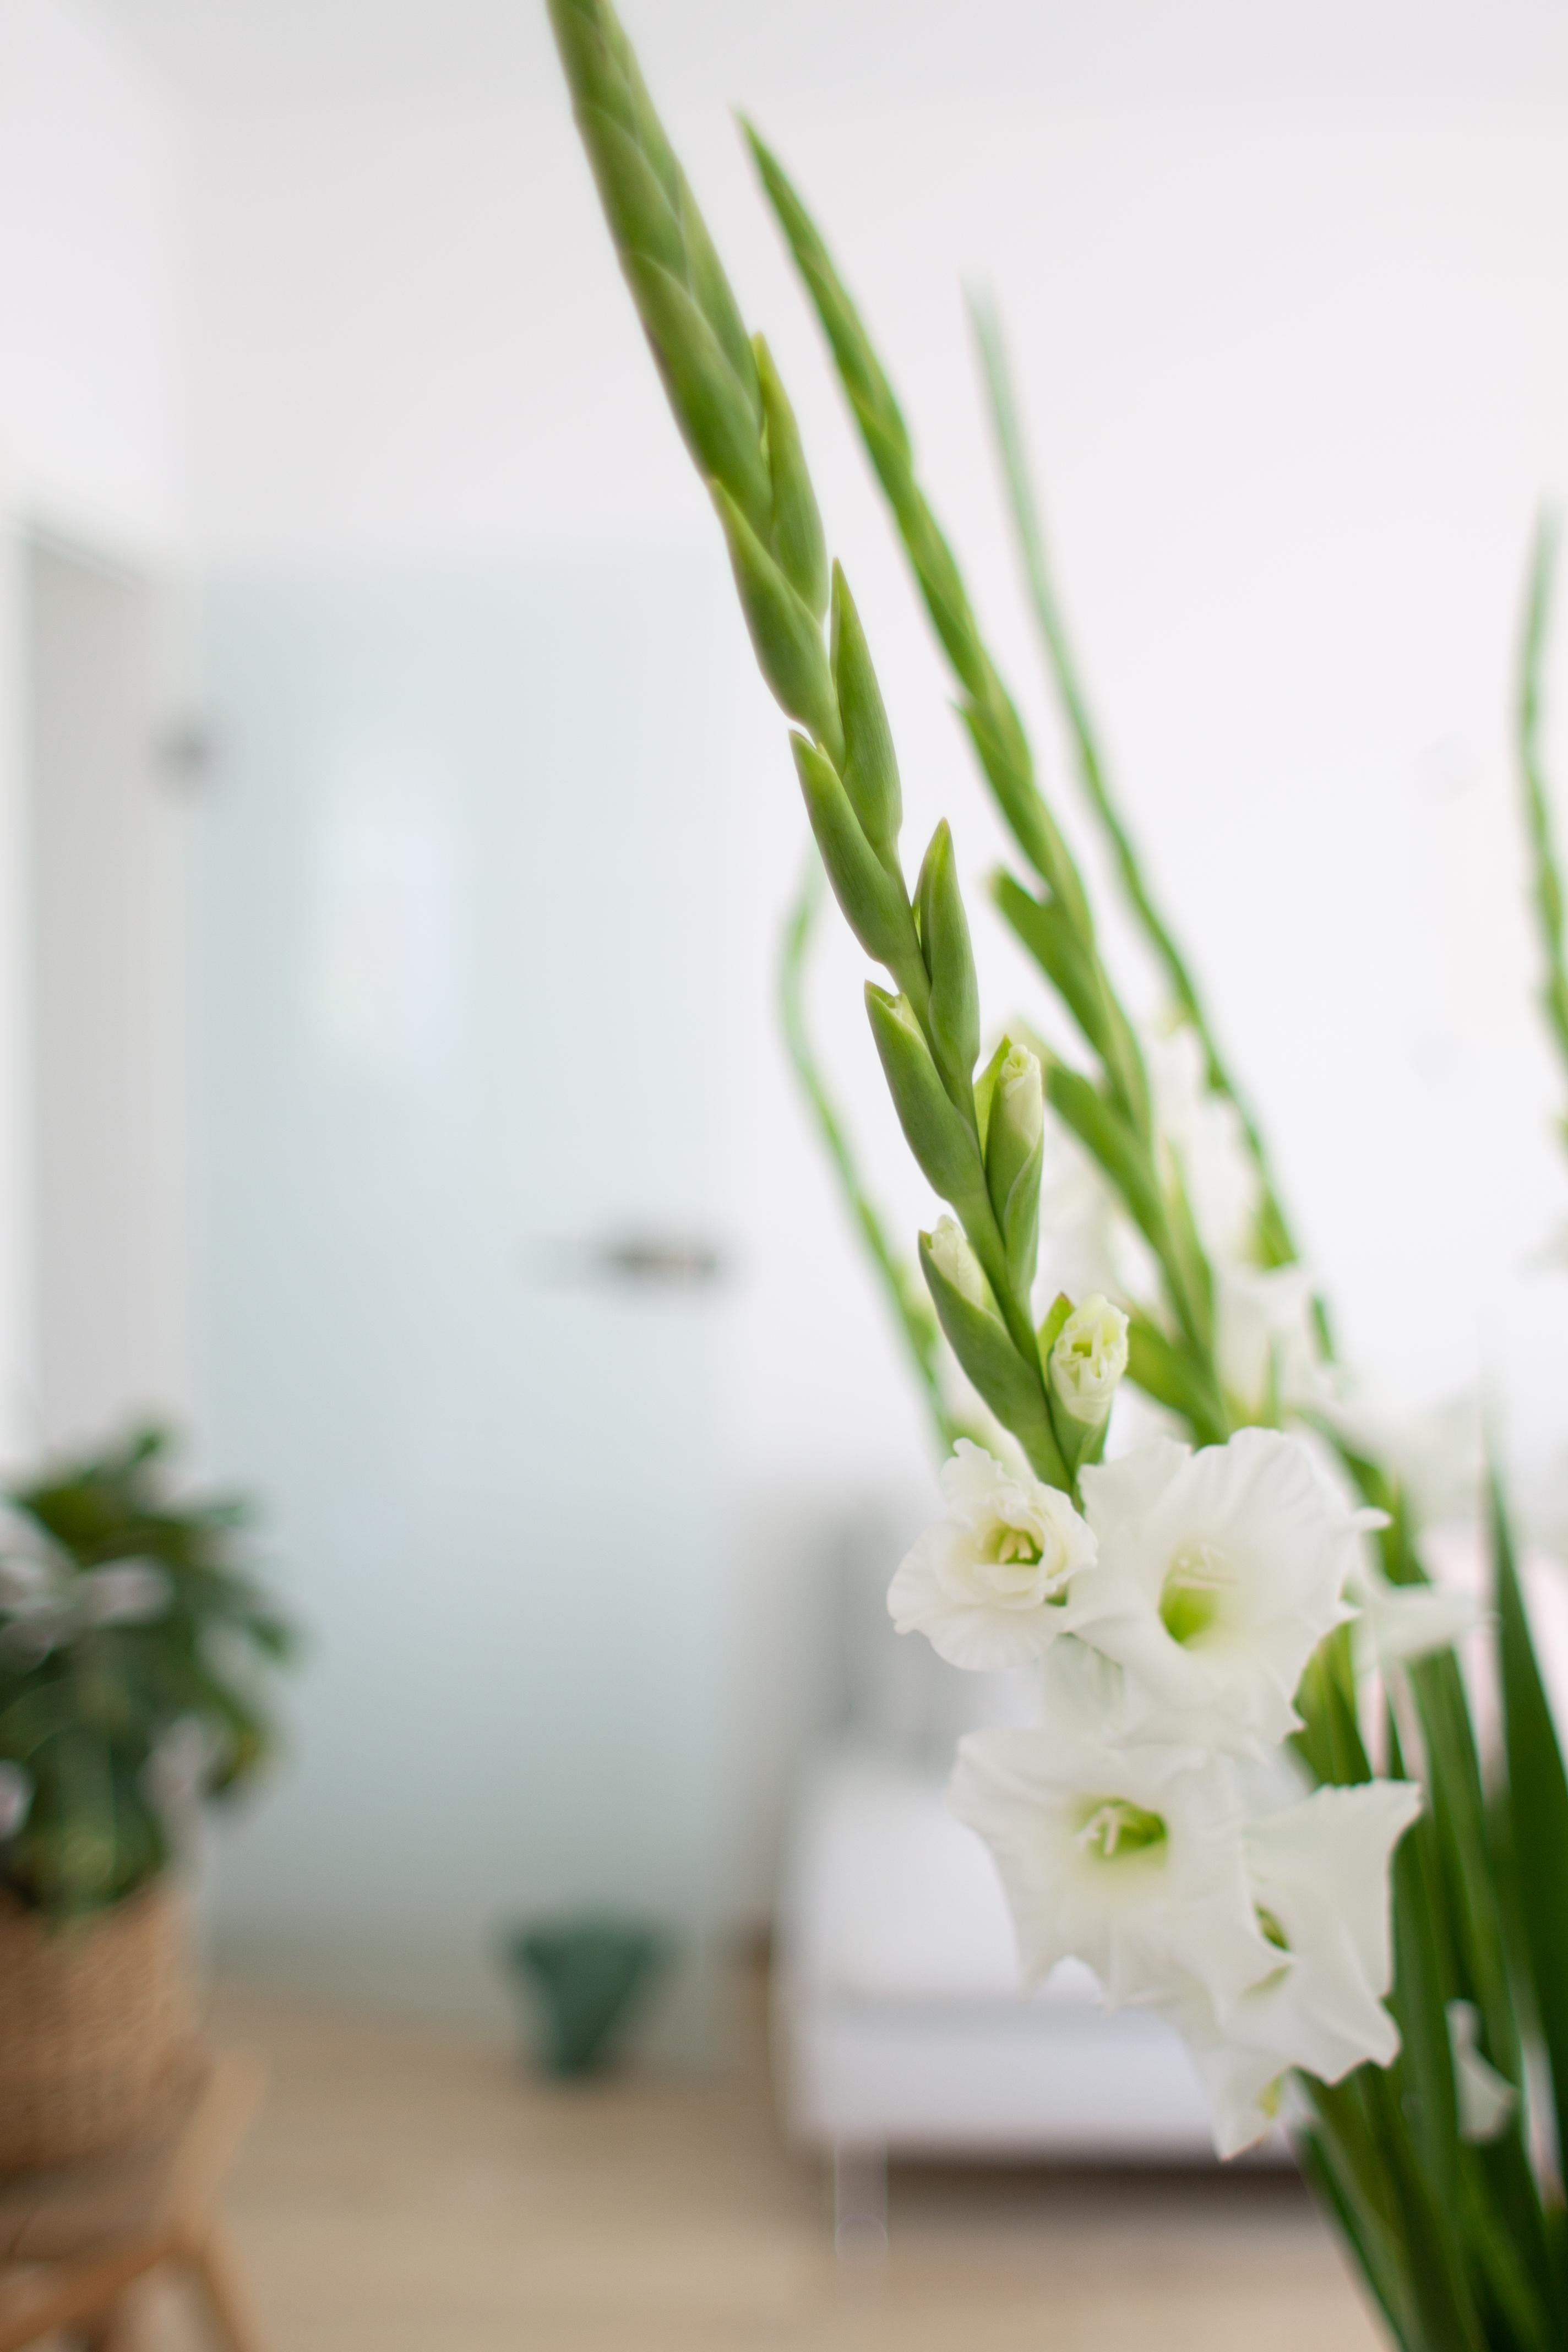 #wohnzimmer #freshflowers #ikea #gladiolen #schönesleben